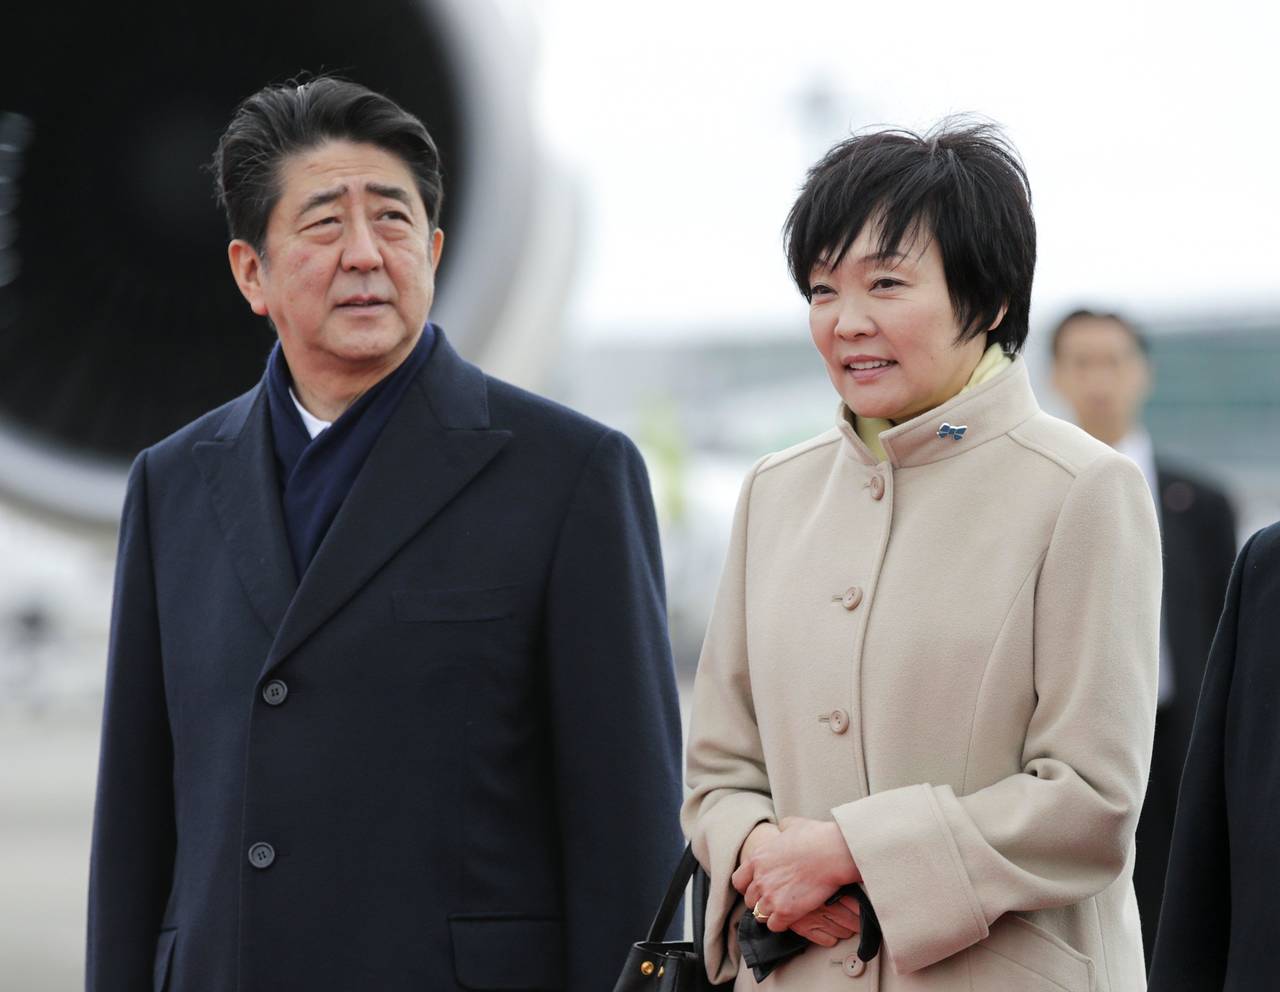 Donación. El primer ministro japonés donó 9 mil dólares a una escuela, a través de su esposa. 